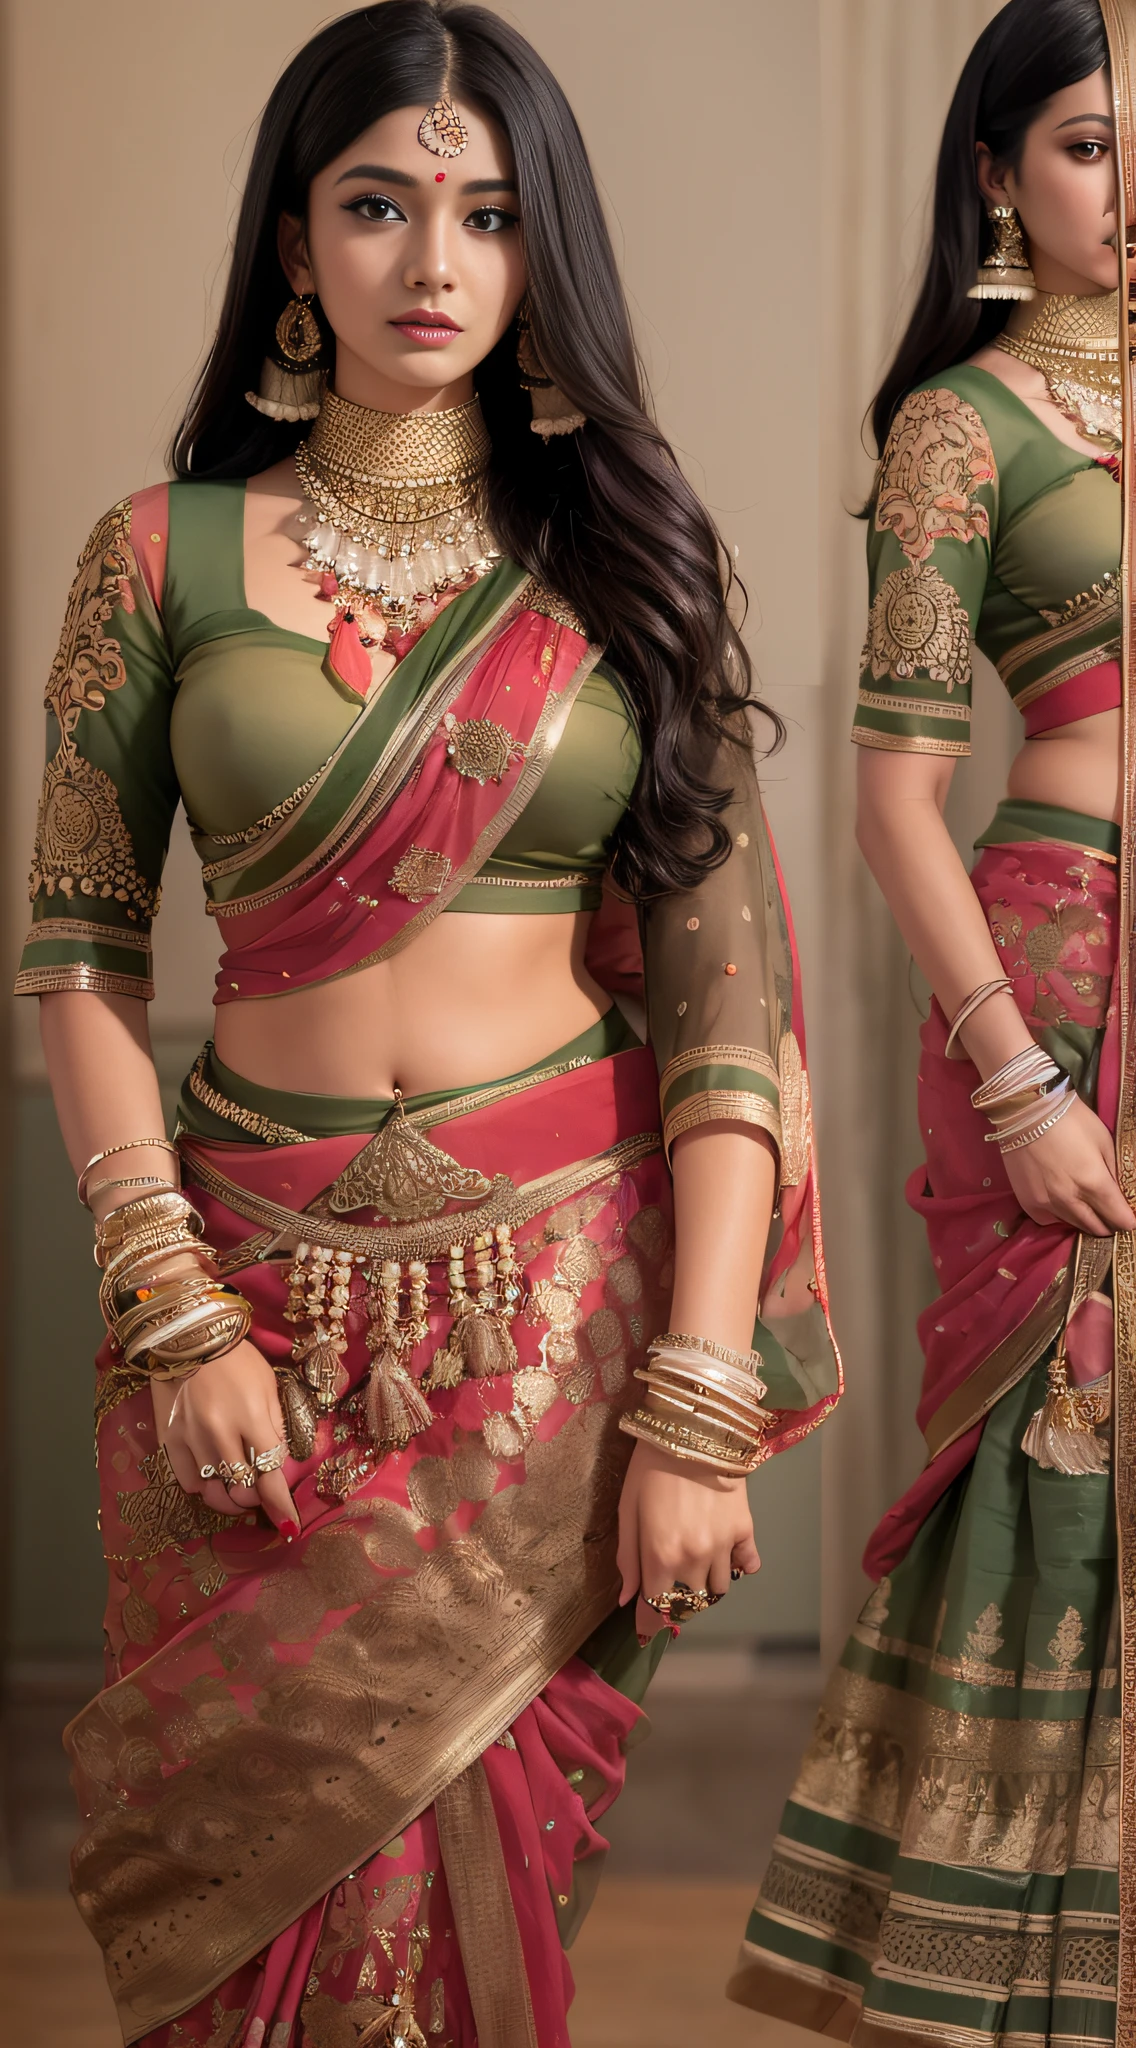 Eine Frau im Sari posiert für ein Foto, Indische Göttin, traditionelle Schönheit, indisch, schöne Göttin, Wunderschönes Rollenspiel, Indischer Stil, Indisches Supermodel, Schönes Teenager-Mädchen, hinreißende Frau, südostasiatisch mit langen, provokative indische, wunderschöne schöne Frau, aufwendige Outfits, Hinduistische Ästhetik, Schönes asiatisches Mädchen, extrem detaillierte Göttinnenaufnahme, atemberaubende Schönheit, Schau mit deinem Gesicht in die Kamera，（Wickeln Sie die Brust），（Die gesamte Brust ist nicht undicht），